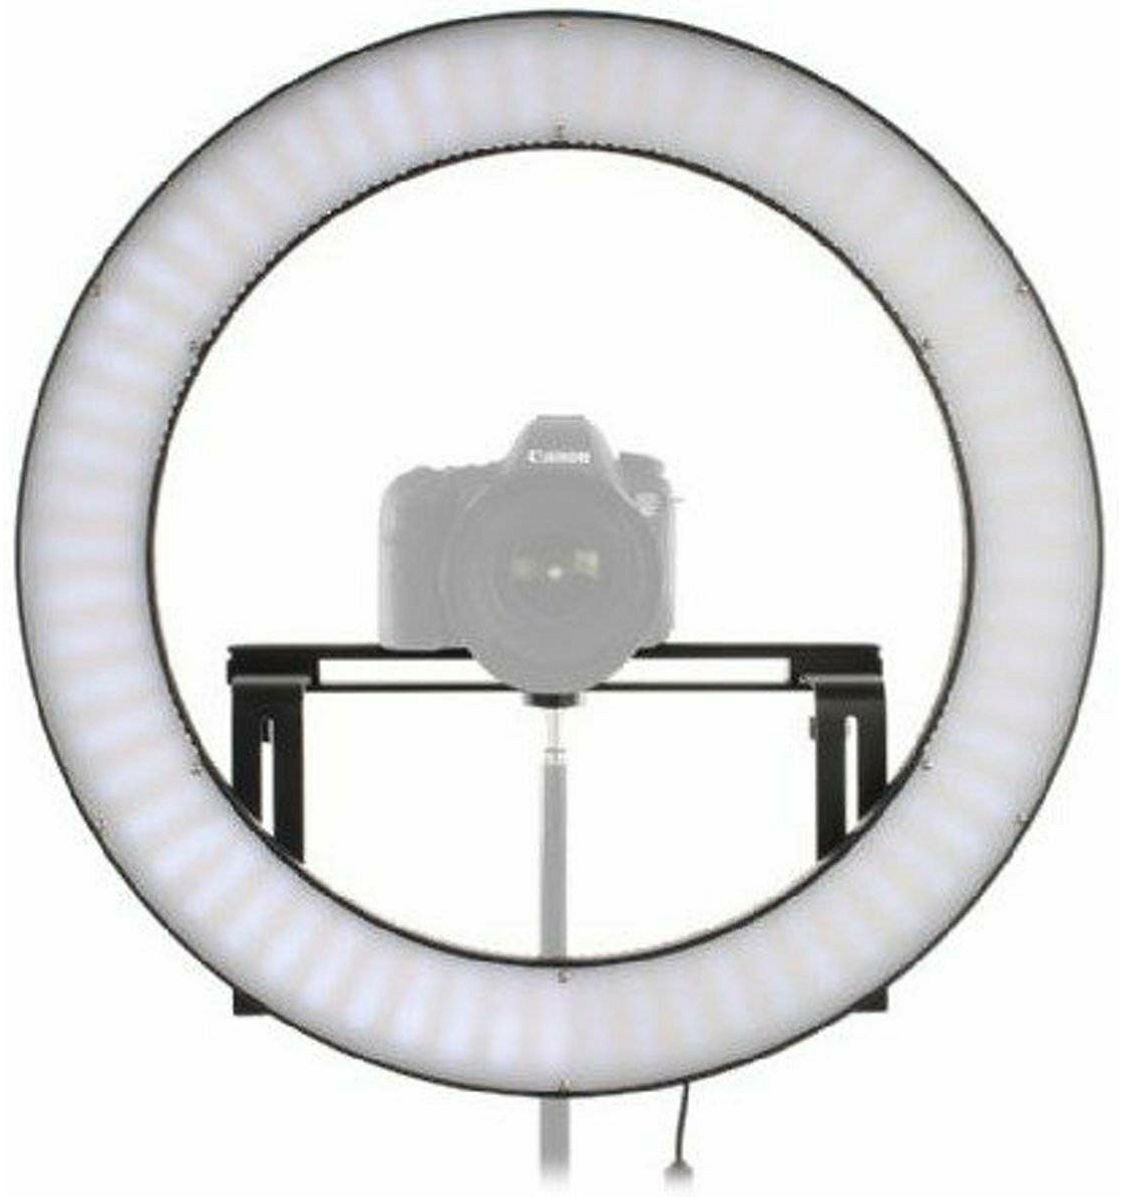 Falcon Eyes Ring LED Lamp Bi-Color Dimmable DVR-512DVC on 230V kontinuirana kružna rasvjeta